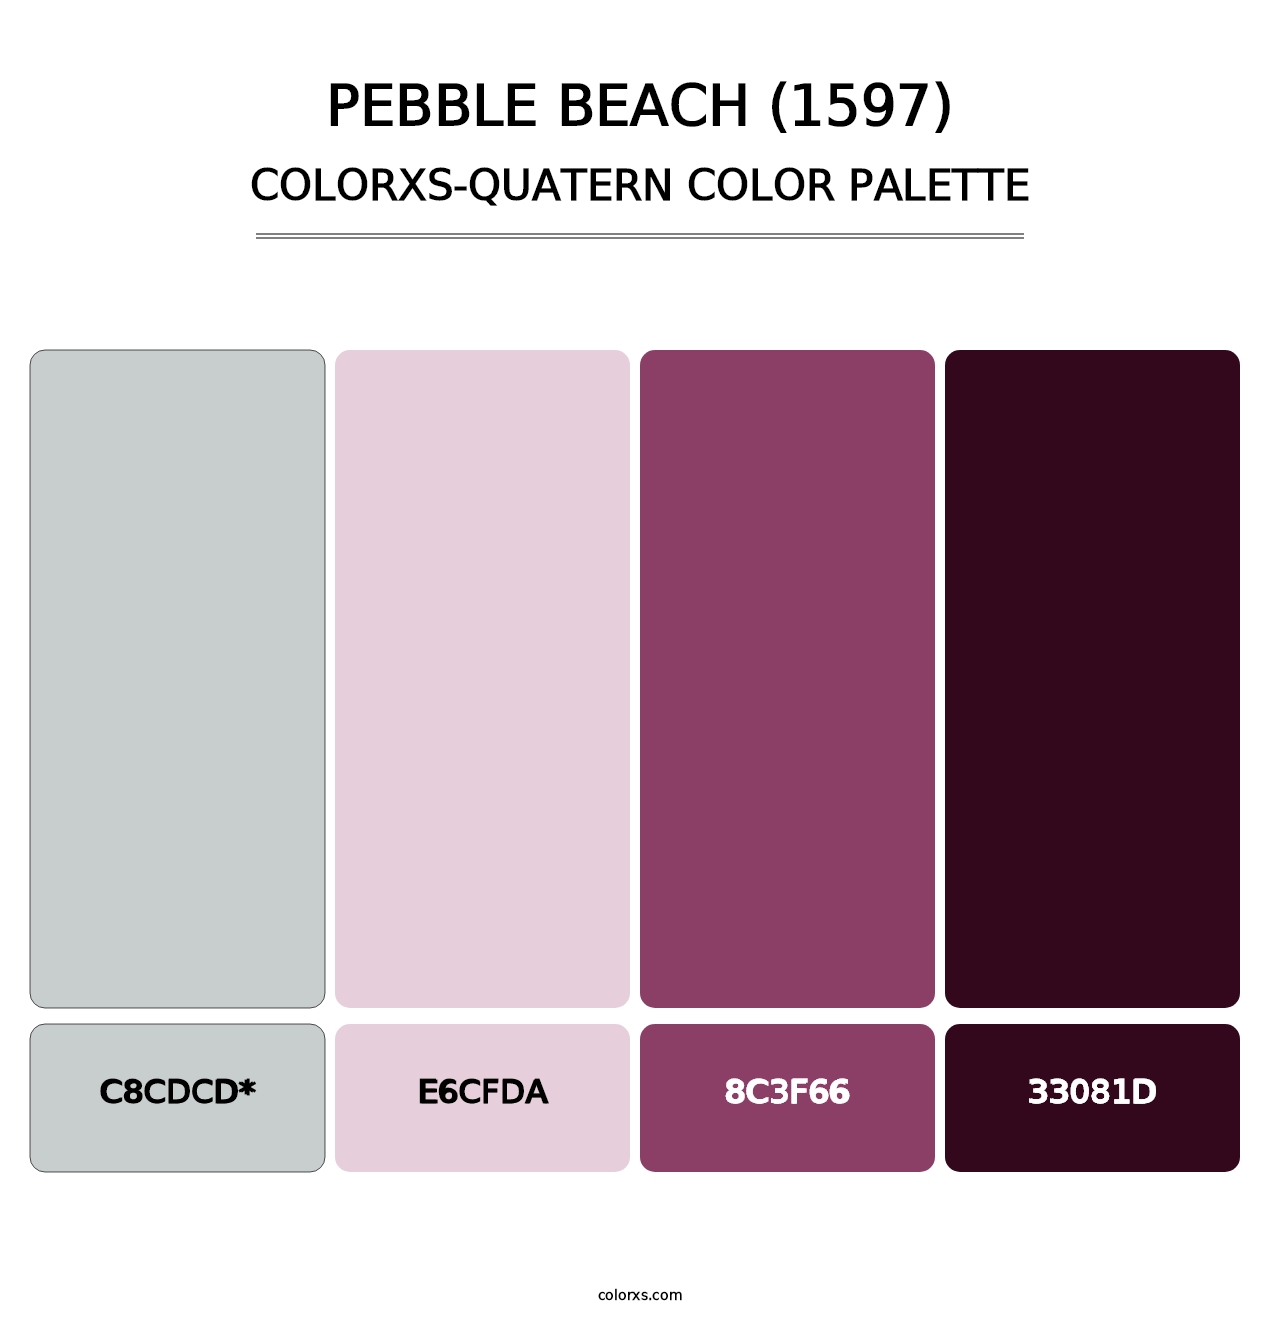 Pebble Beach (1597) - Colorxs Quatern Palette